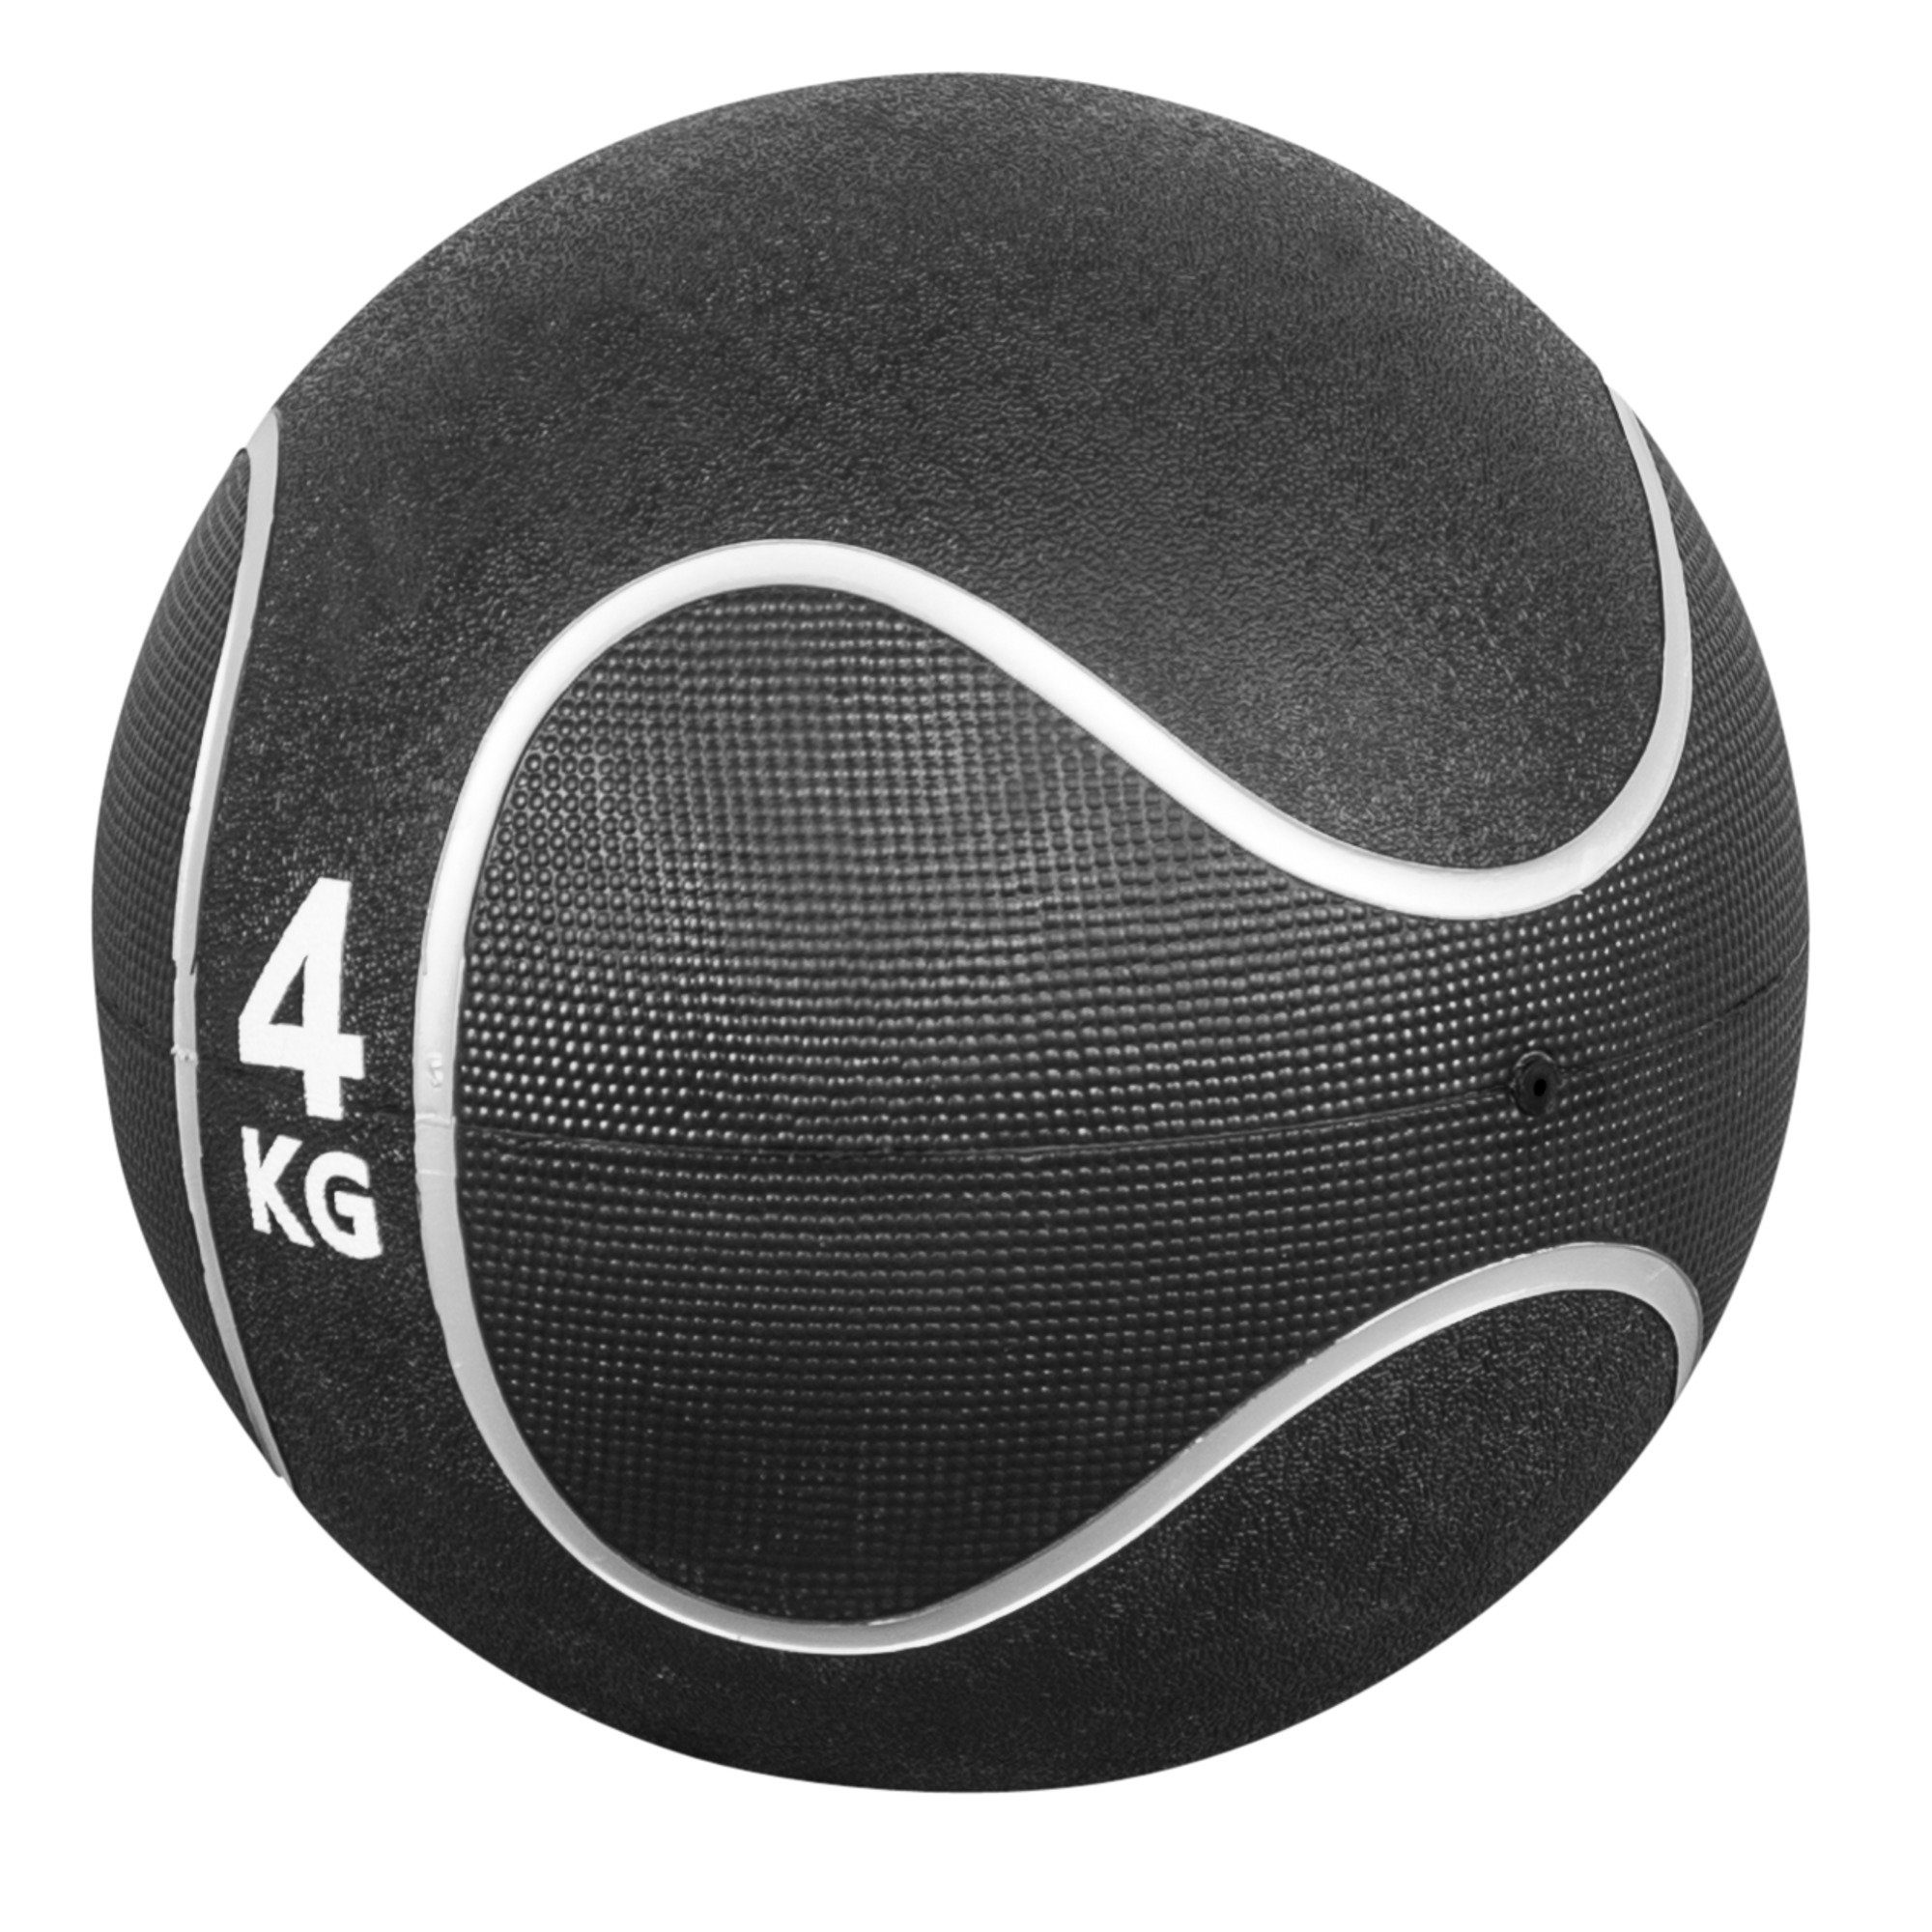 23 cm, / Gummi, GORILLA Fitnessball aus Set, 29 KG Ø SPORTS 4 rutschfest, Medizinball Einzeln oder